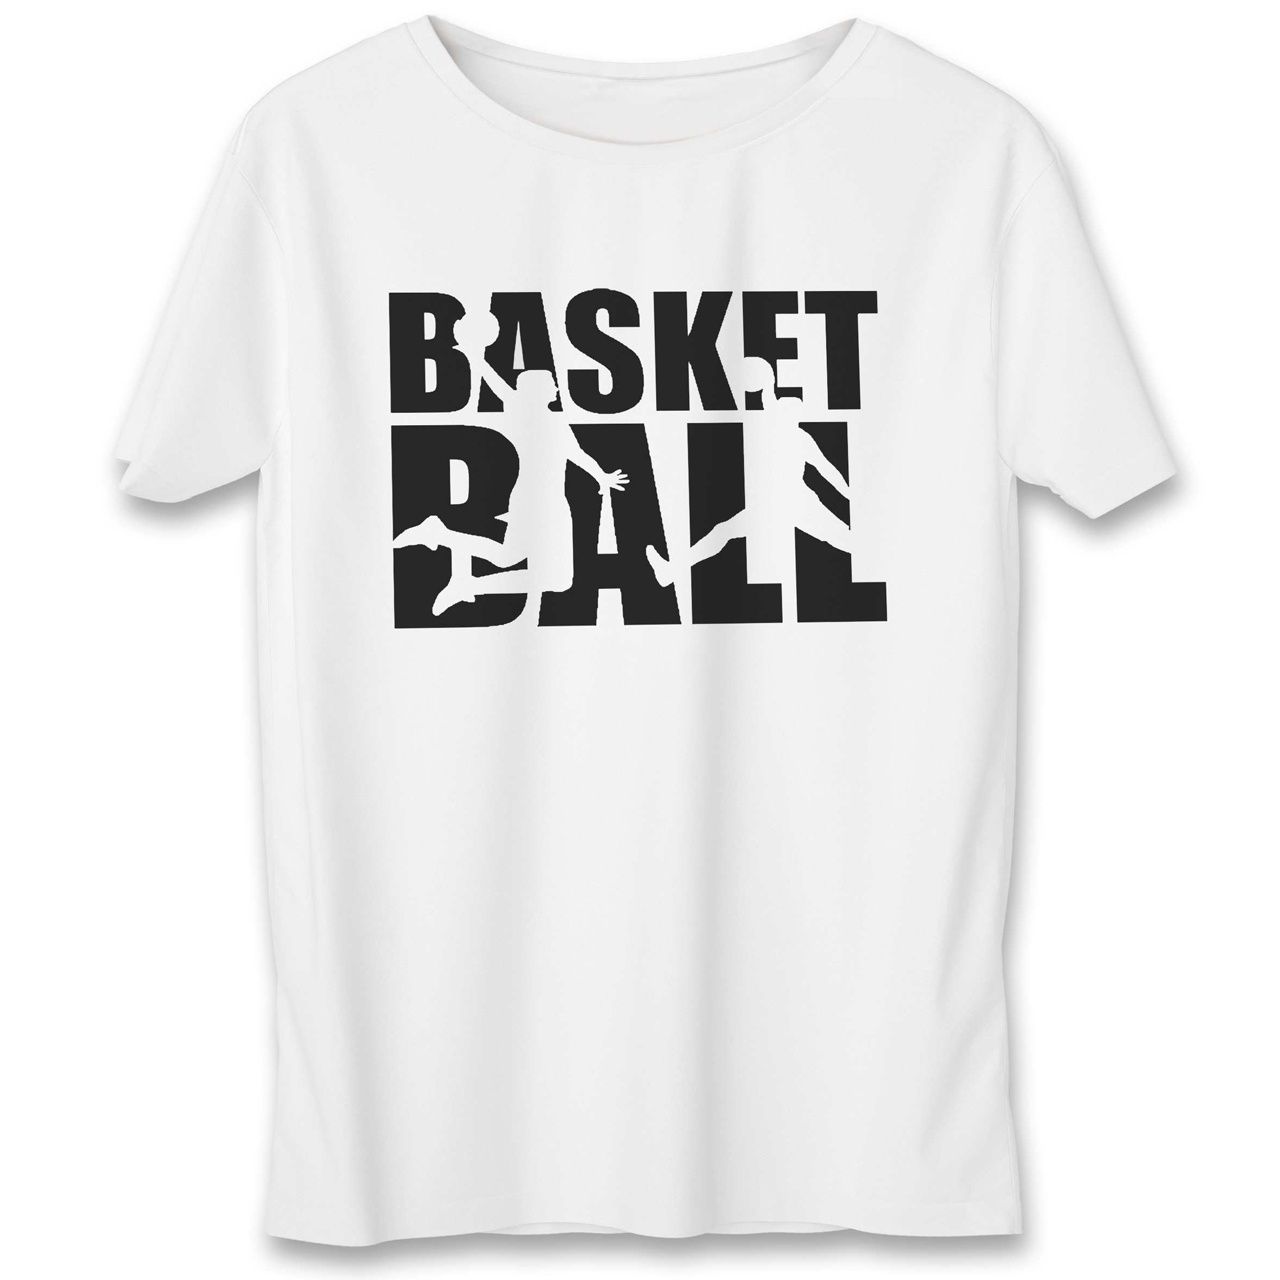 تی شرت یورپرینت به رسم طرح بسکتبال کد 530 -  - 1